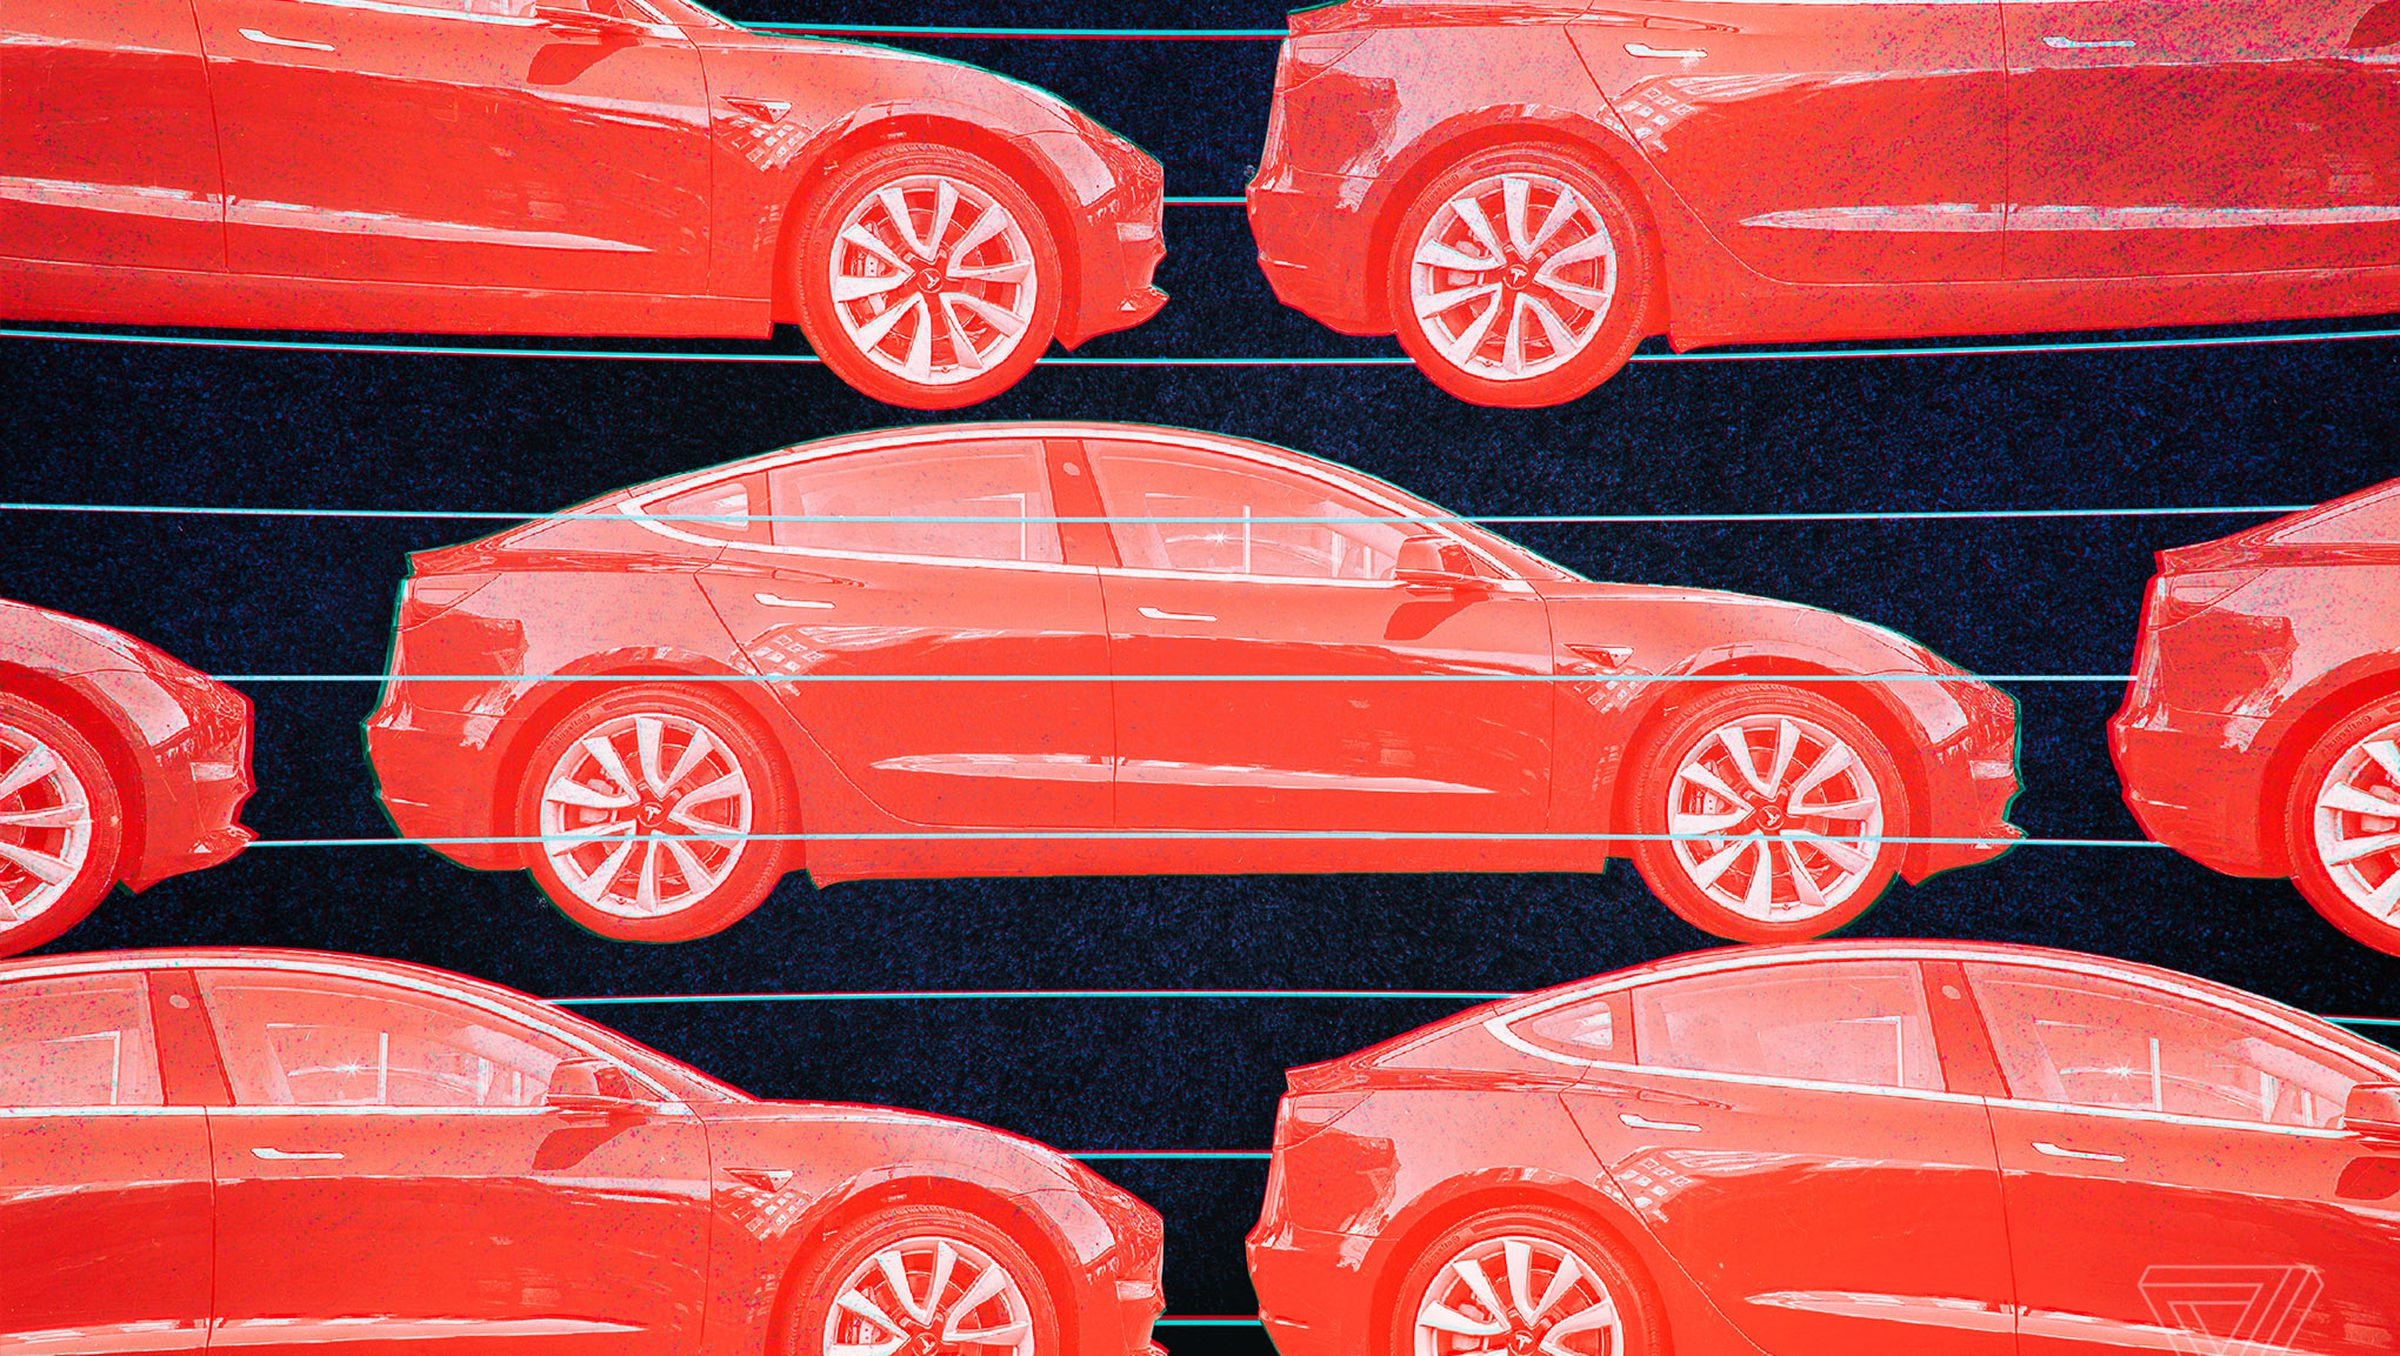 Illustration depicting multiple red Tesla sedans on a black background.